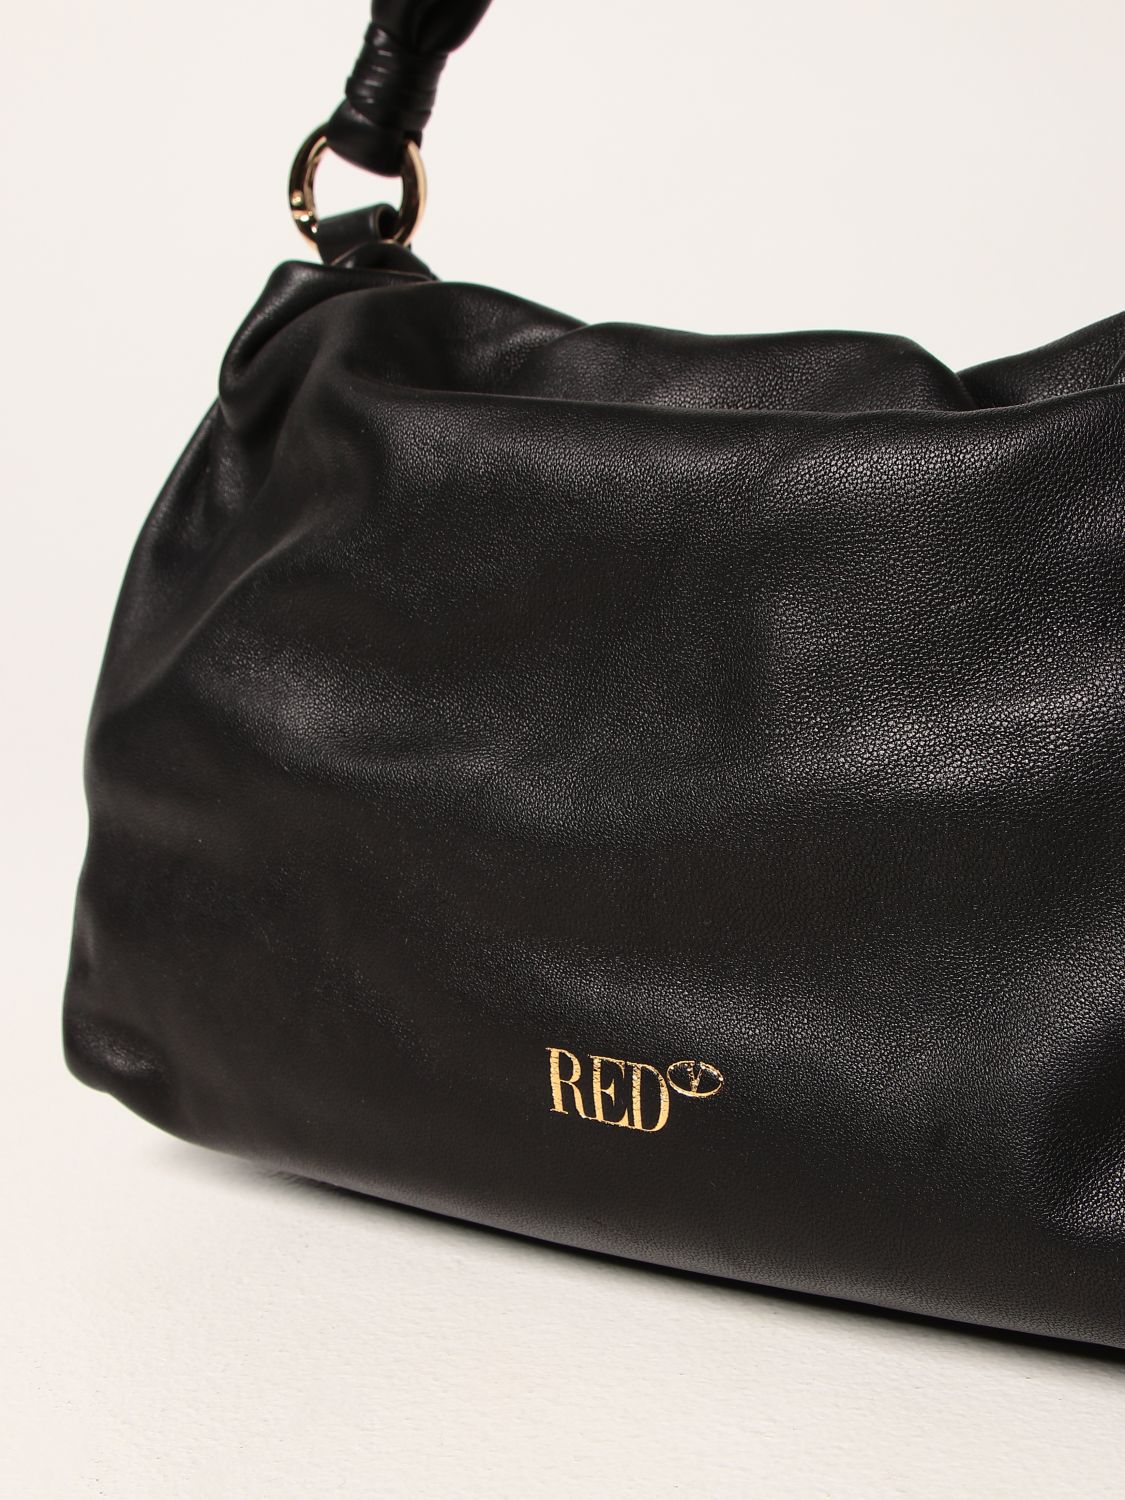 Handbag Red(V): Turnered Red (V) leather bag black 4